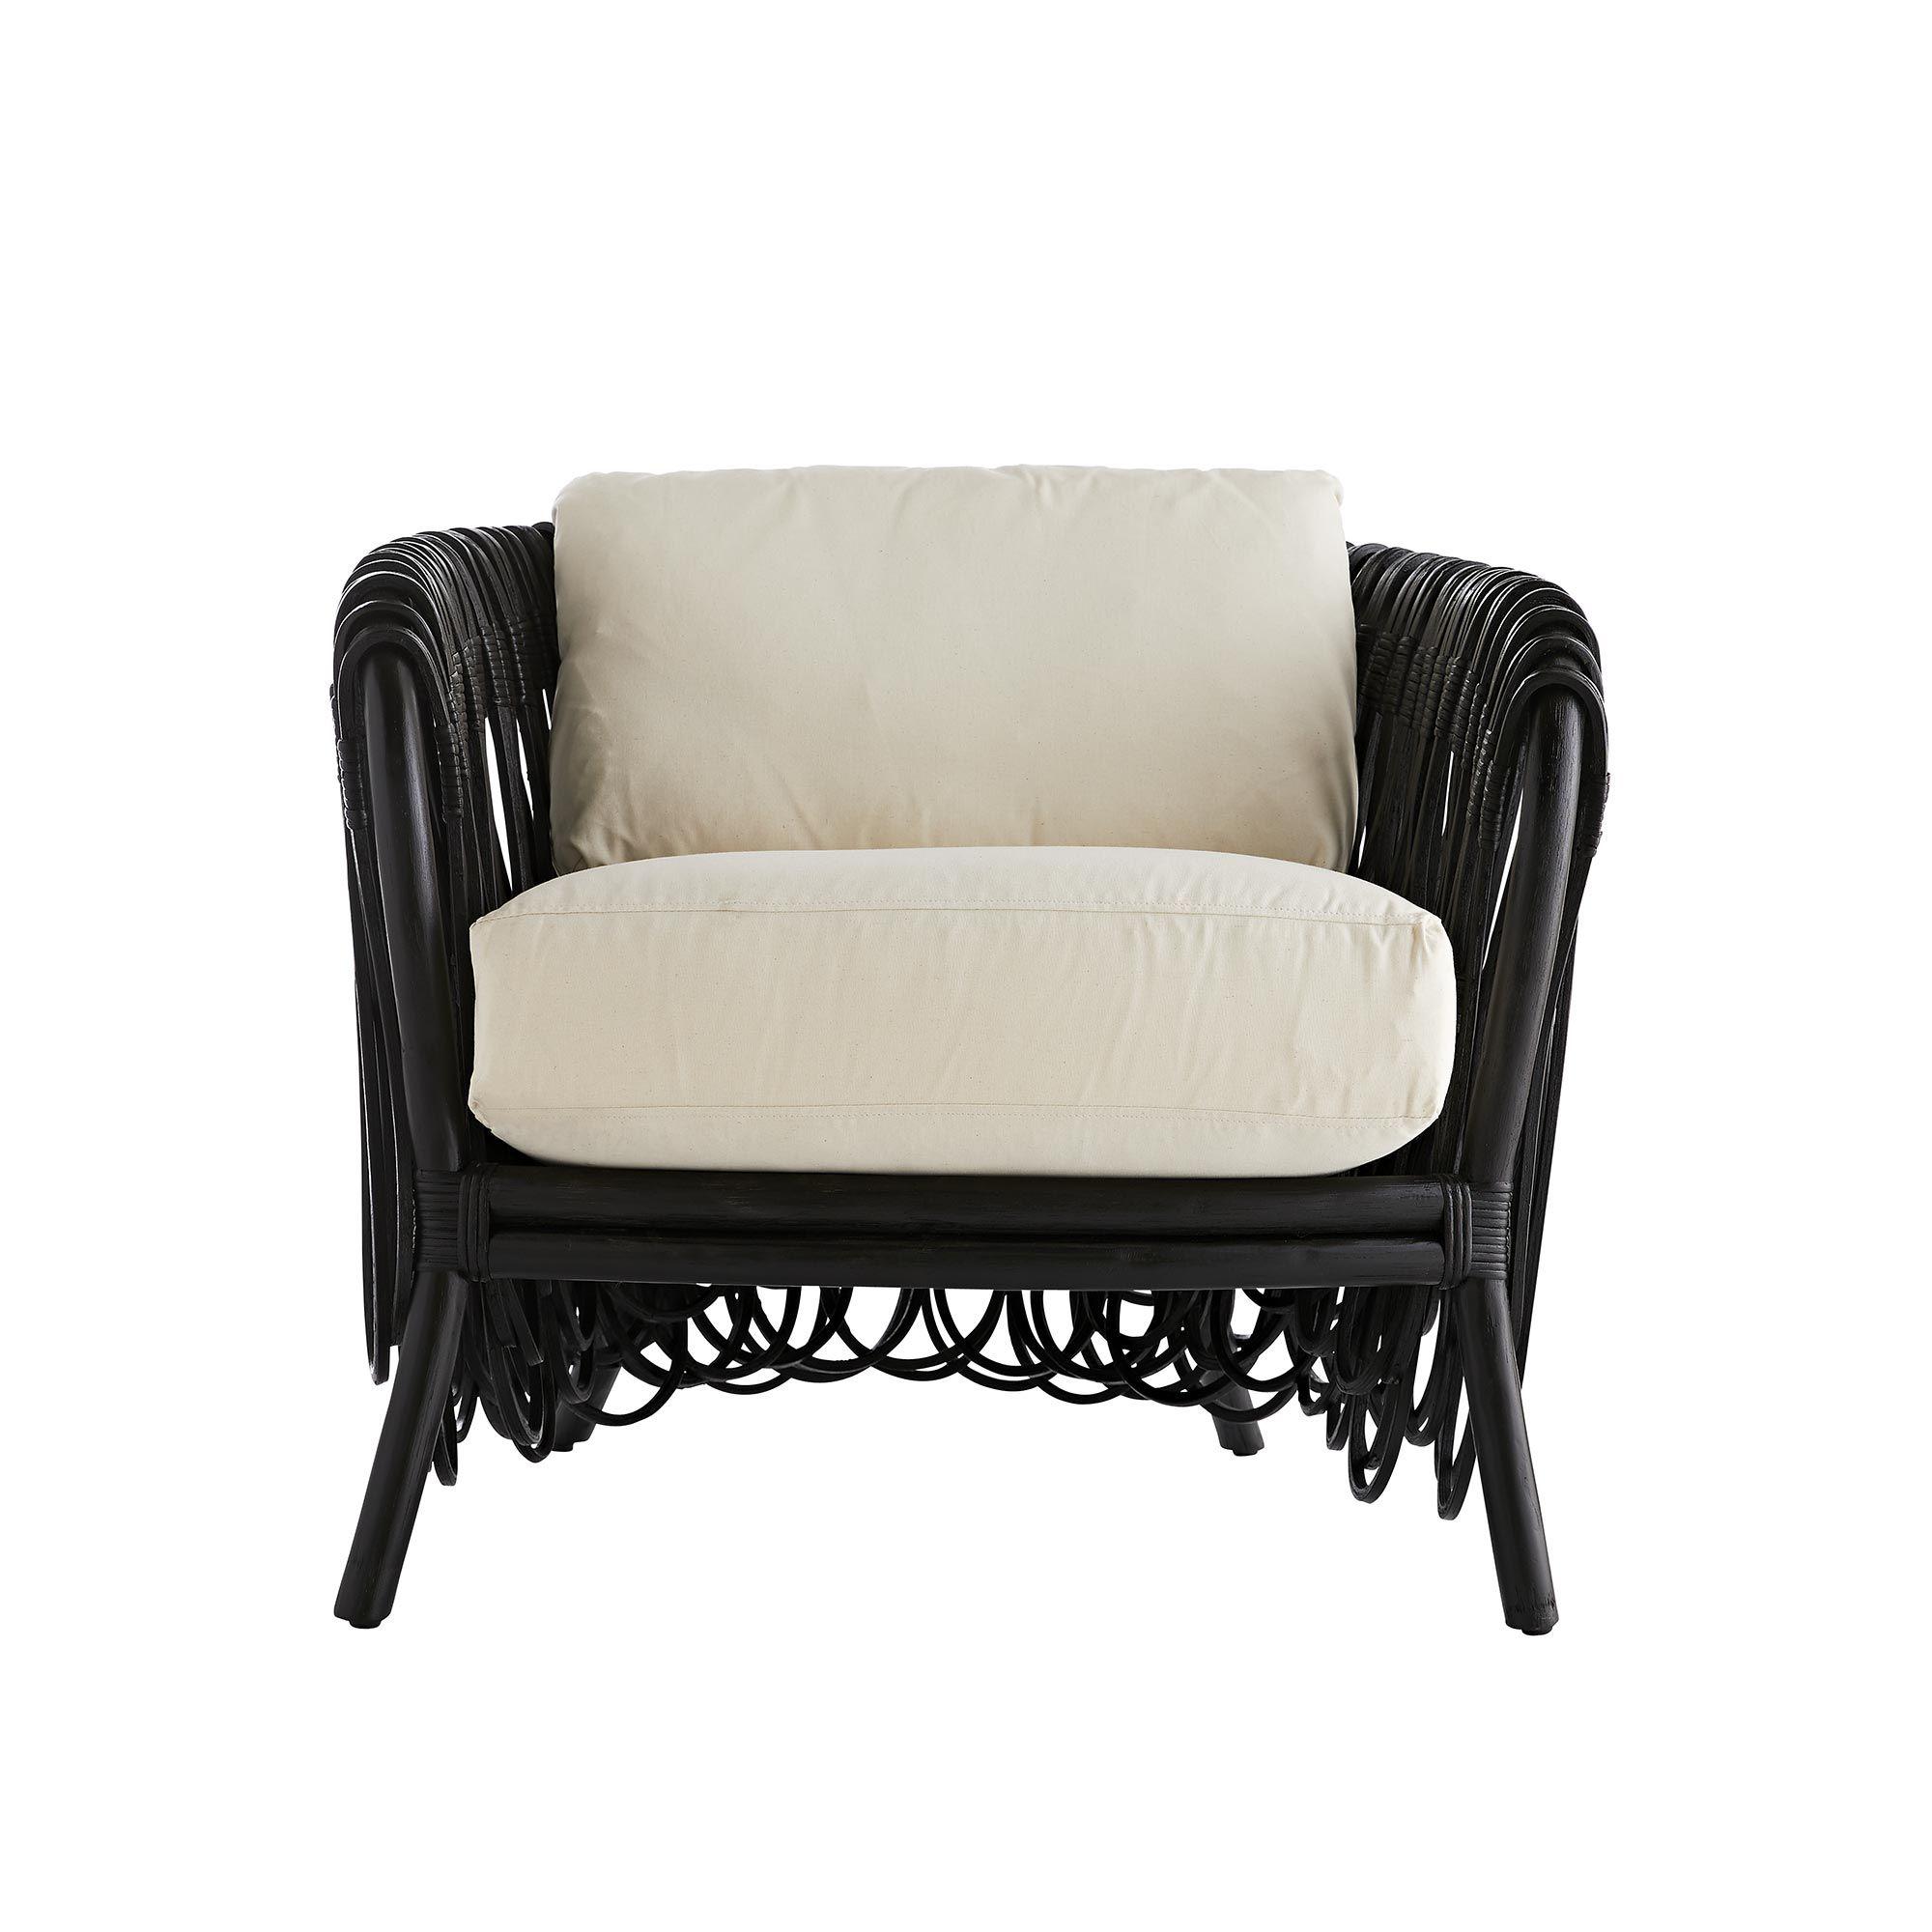 Купить Кресло Strata Lounge Chair в интернет-магазине roooms.ru